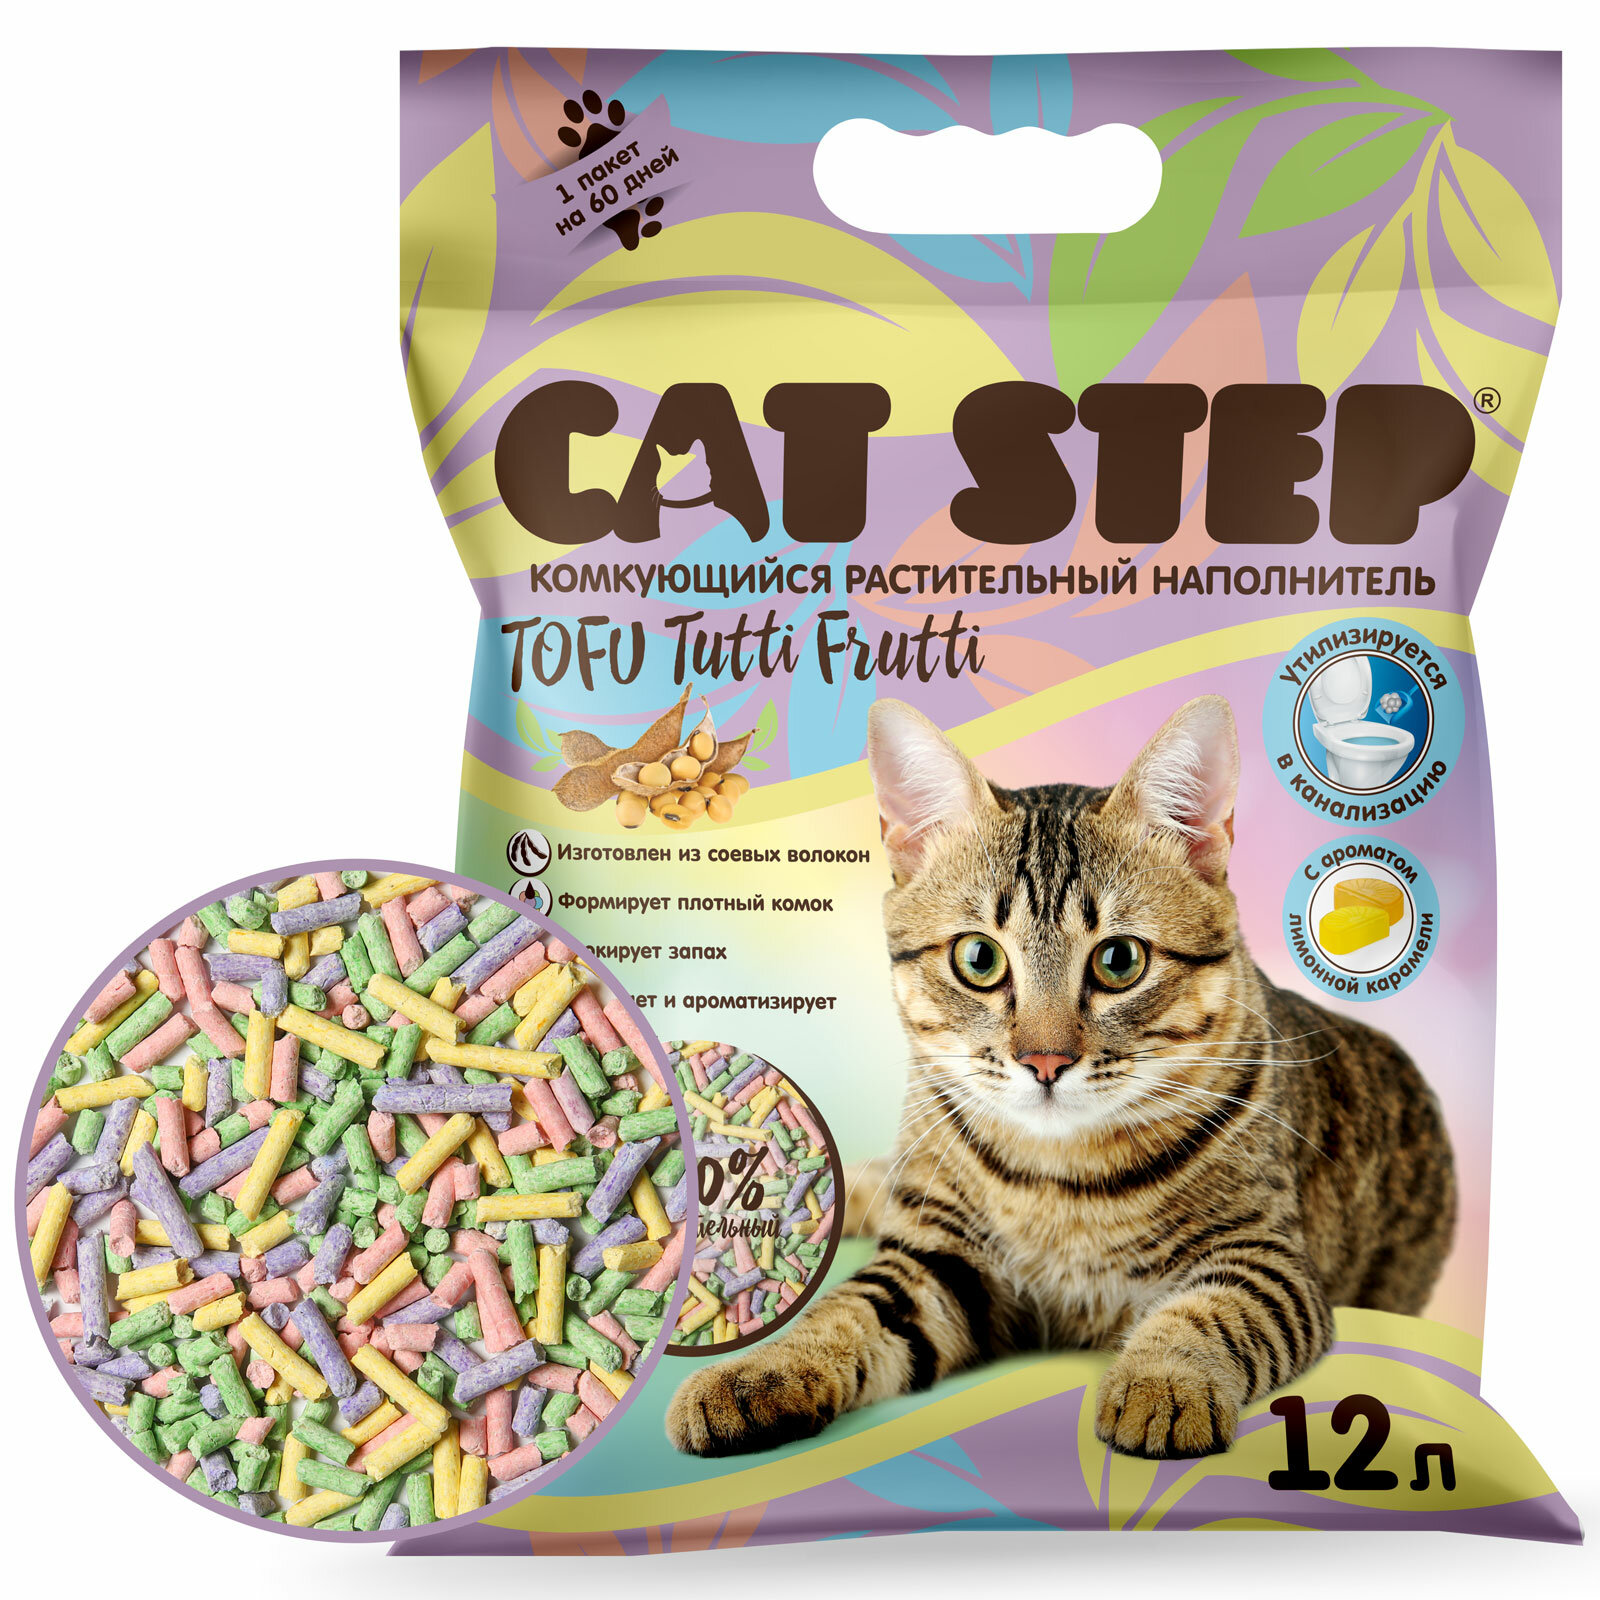 Наполнитель для кошачьих туалетов Cat Step Tofu Tutti Frutti, комкующийся растительный, 12 л